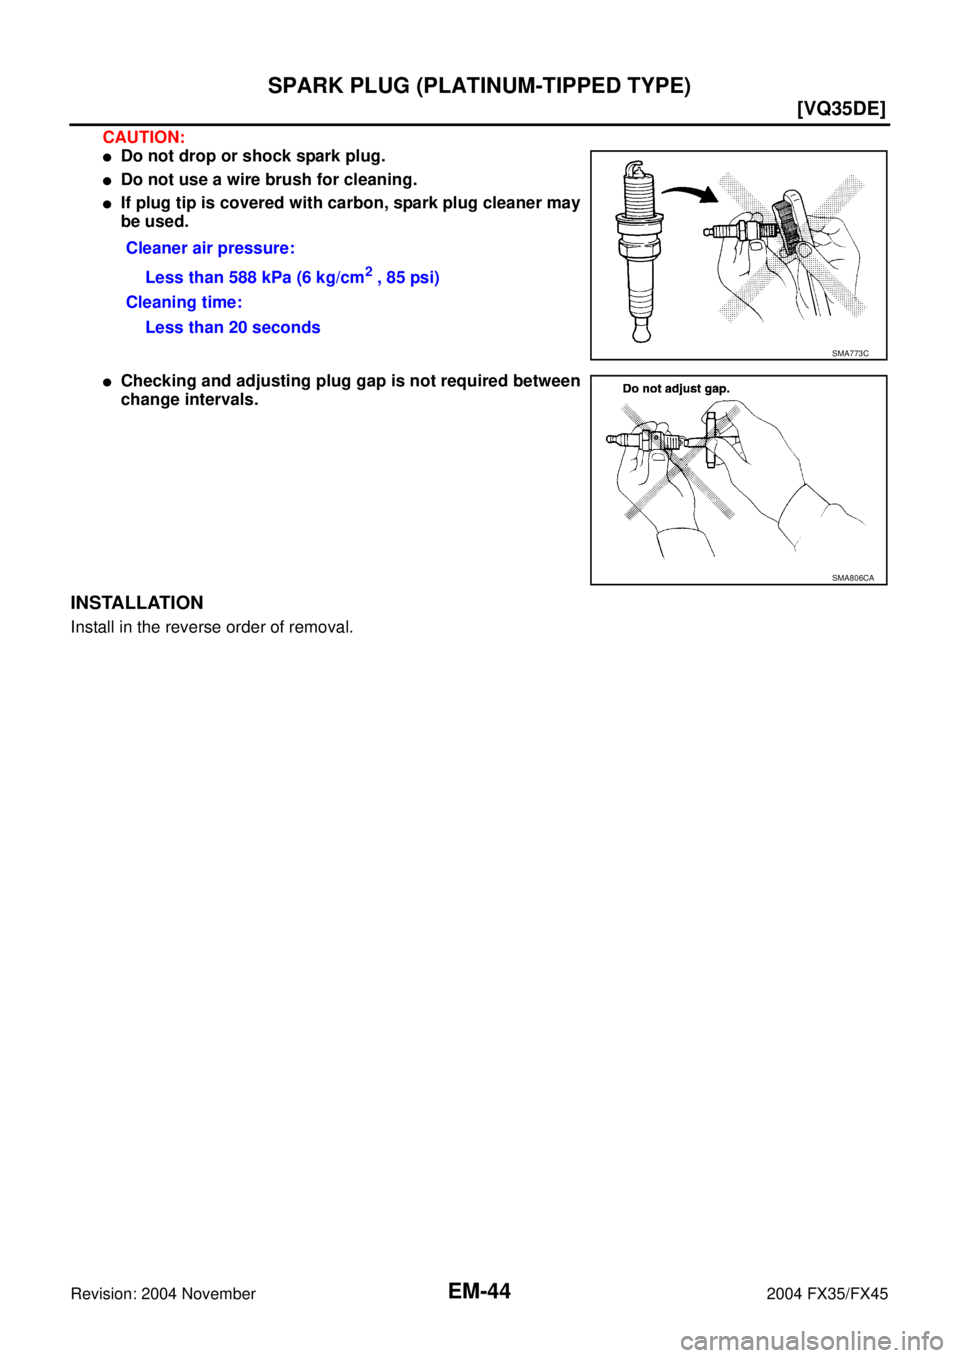 INFINITI FX35 2004  Service Manual EM-44
[VQ35DE]
SPARK PLUG (PLATINUM-TIPPED TYPE)
Revision: 2004 November 2004 FX35/FX45
CAUTION:
Do not drop or shock spark plug.
Do not use a wire brush for cleaning.
If plug tip is covered with c